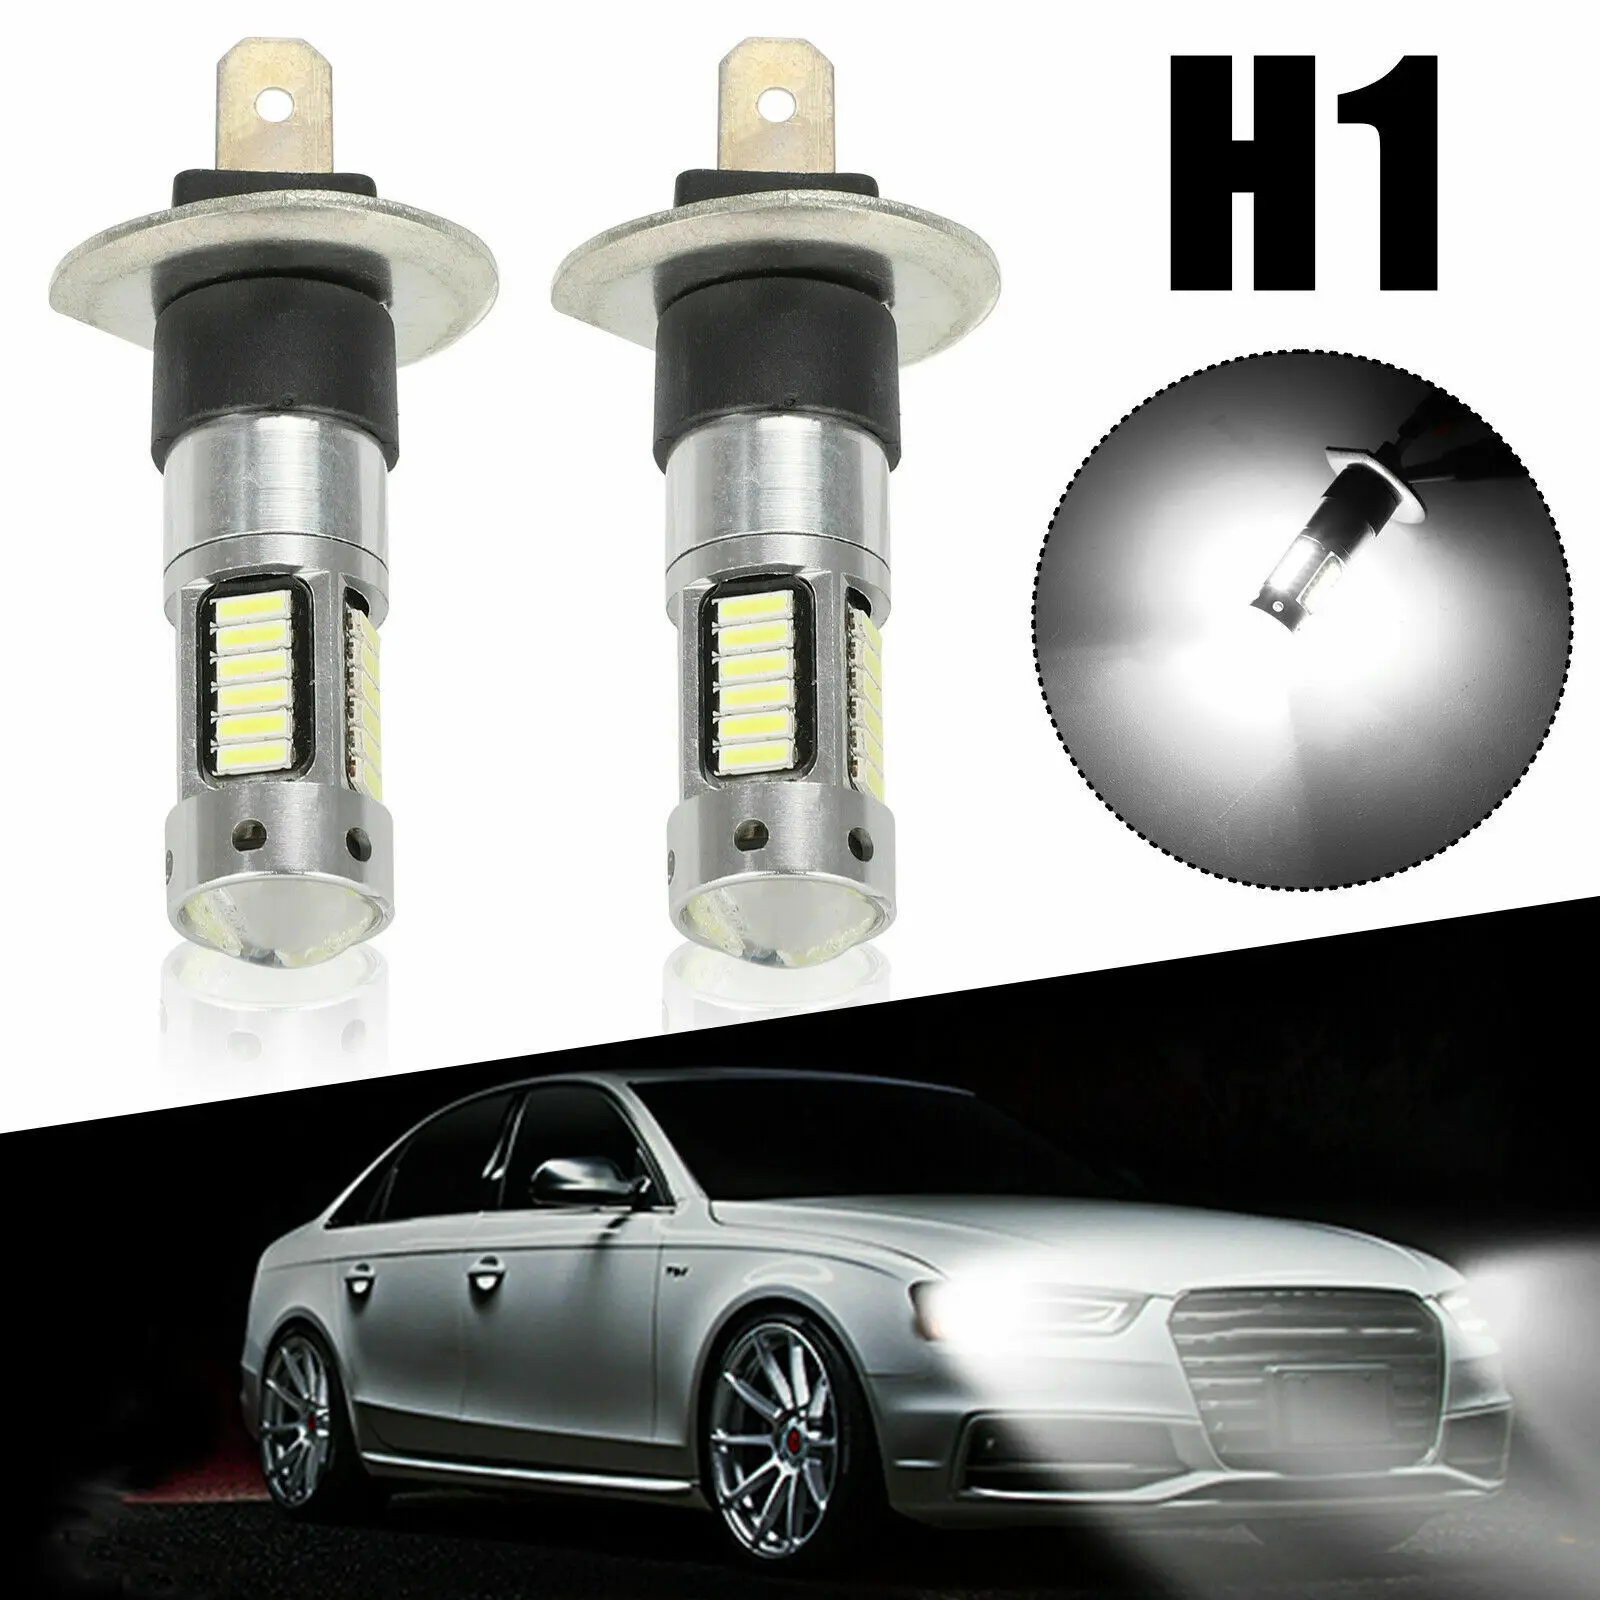 

2pcs H1 LED Fog Light Lamp Headlight Kit Daytime Running Light DRL High Beam Bulbs HID 6000K Xenon White 12V 24V Car Accessories